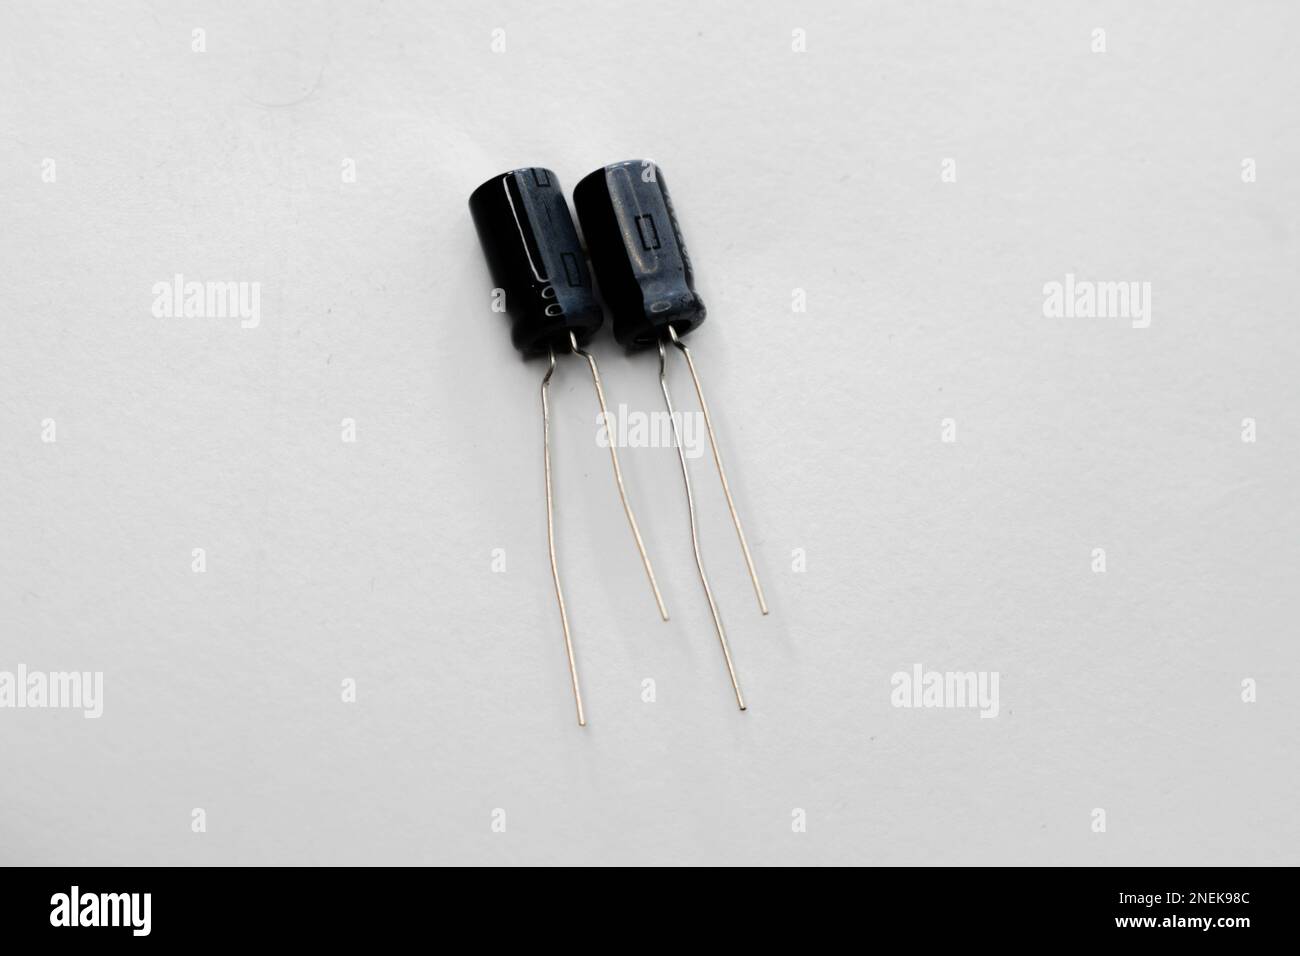 Condensatori multipli isolati su sfondo bianco. I condensatori sono utilizzati in diverse apparecchiature elettroniche come ventole, motori, ecc. Foto Stock